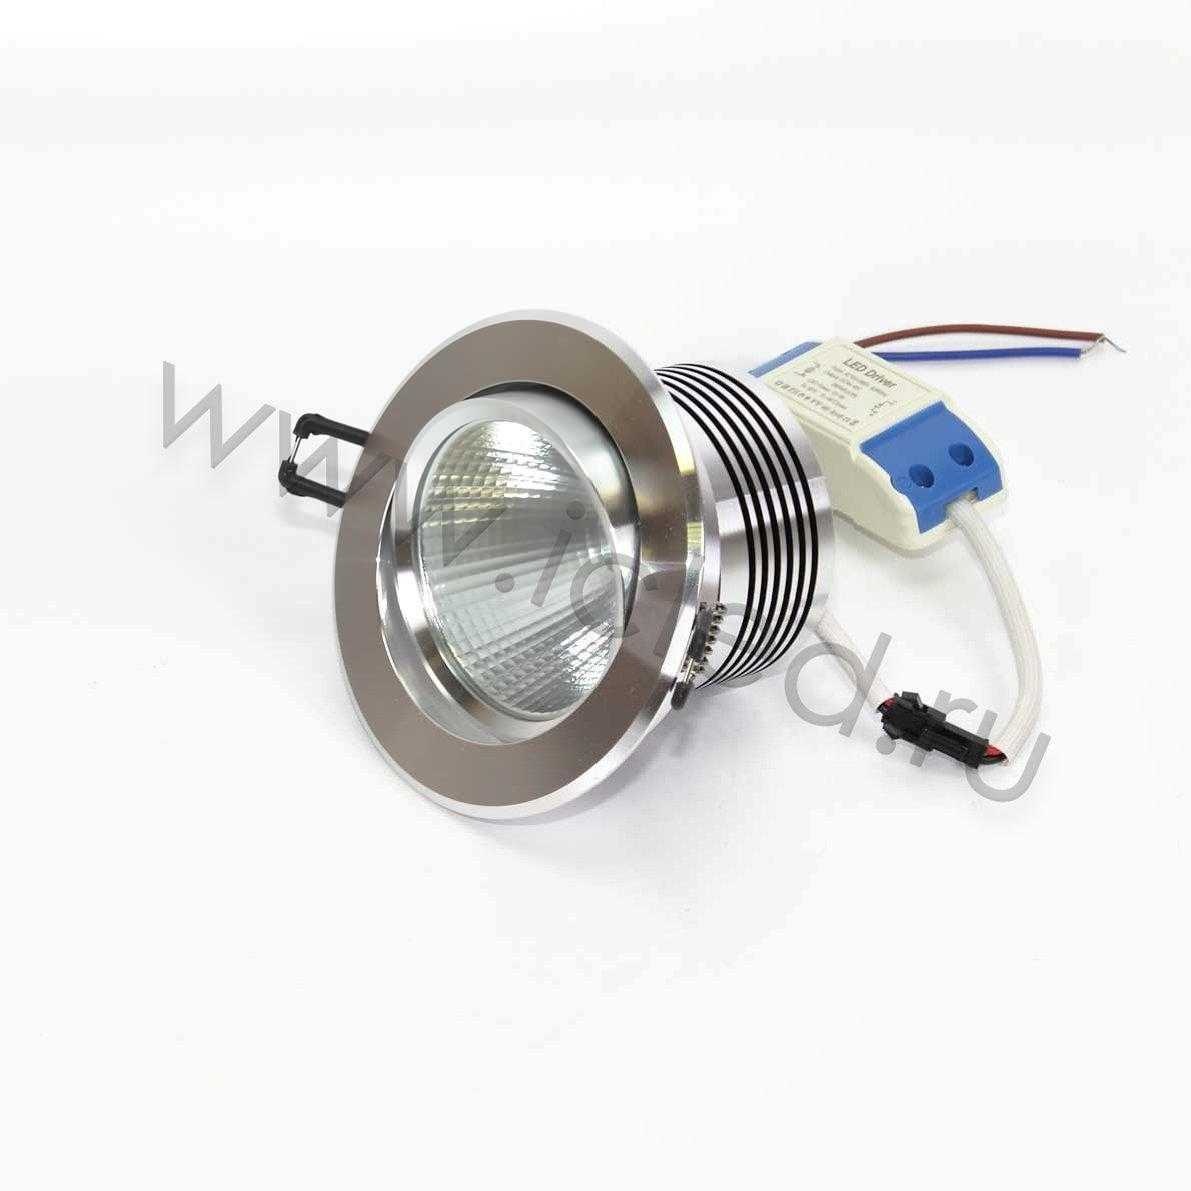 Светодиодные светильники Светодиодный светильник встраиваемый 110 series silver housing BW161 (10W,220V,day white)